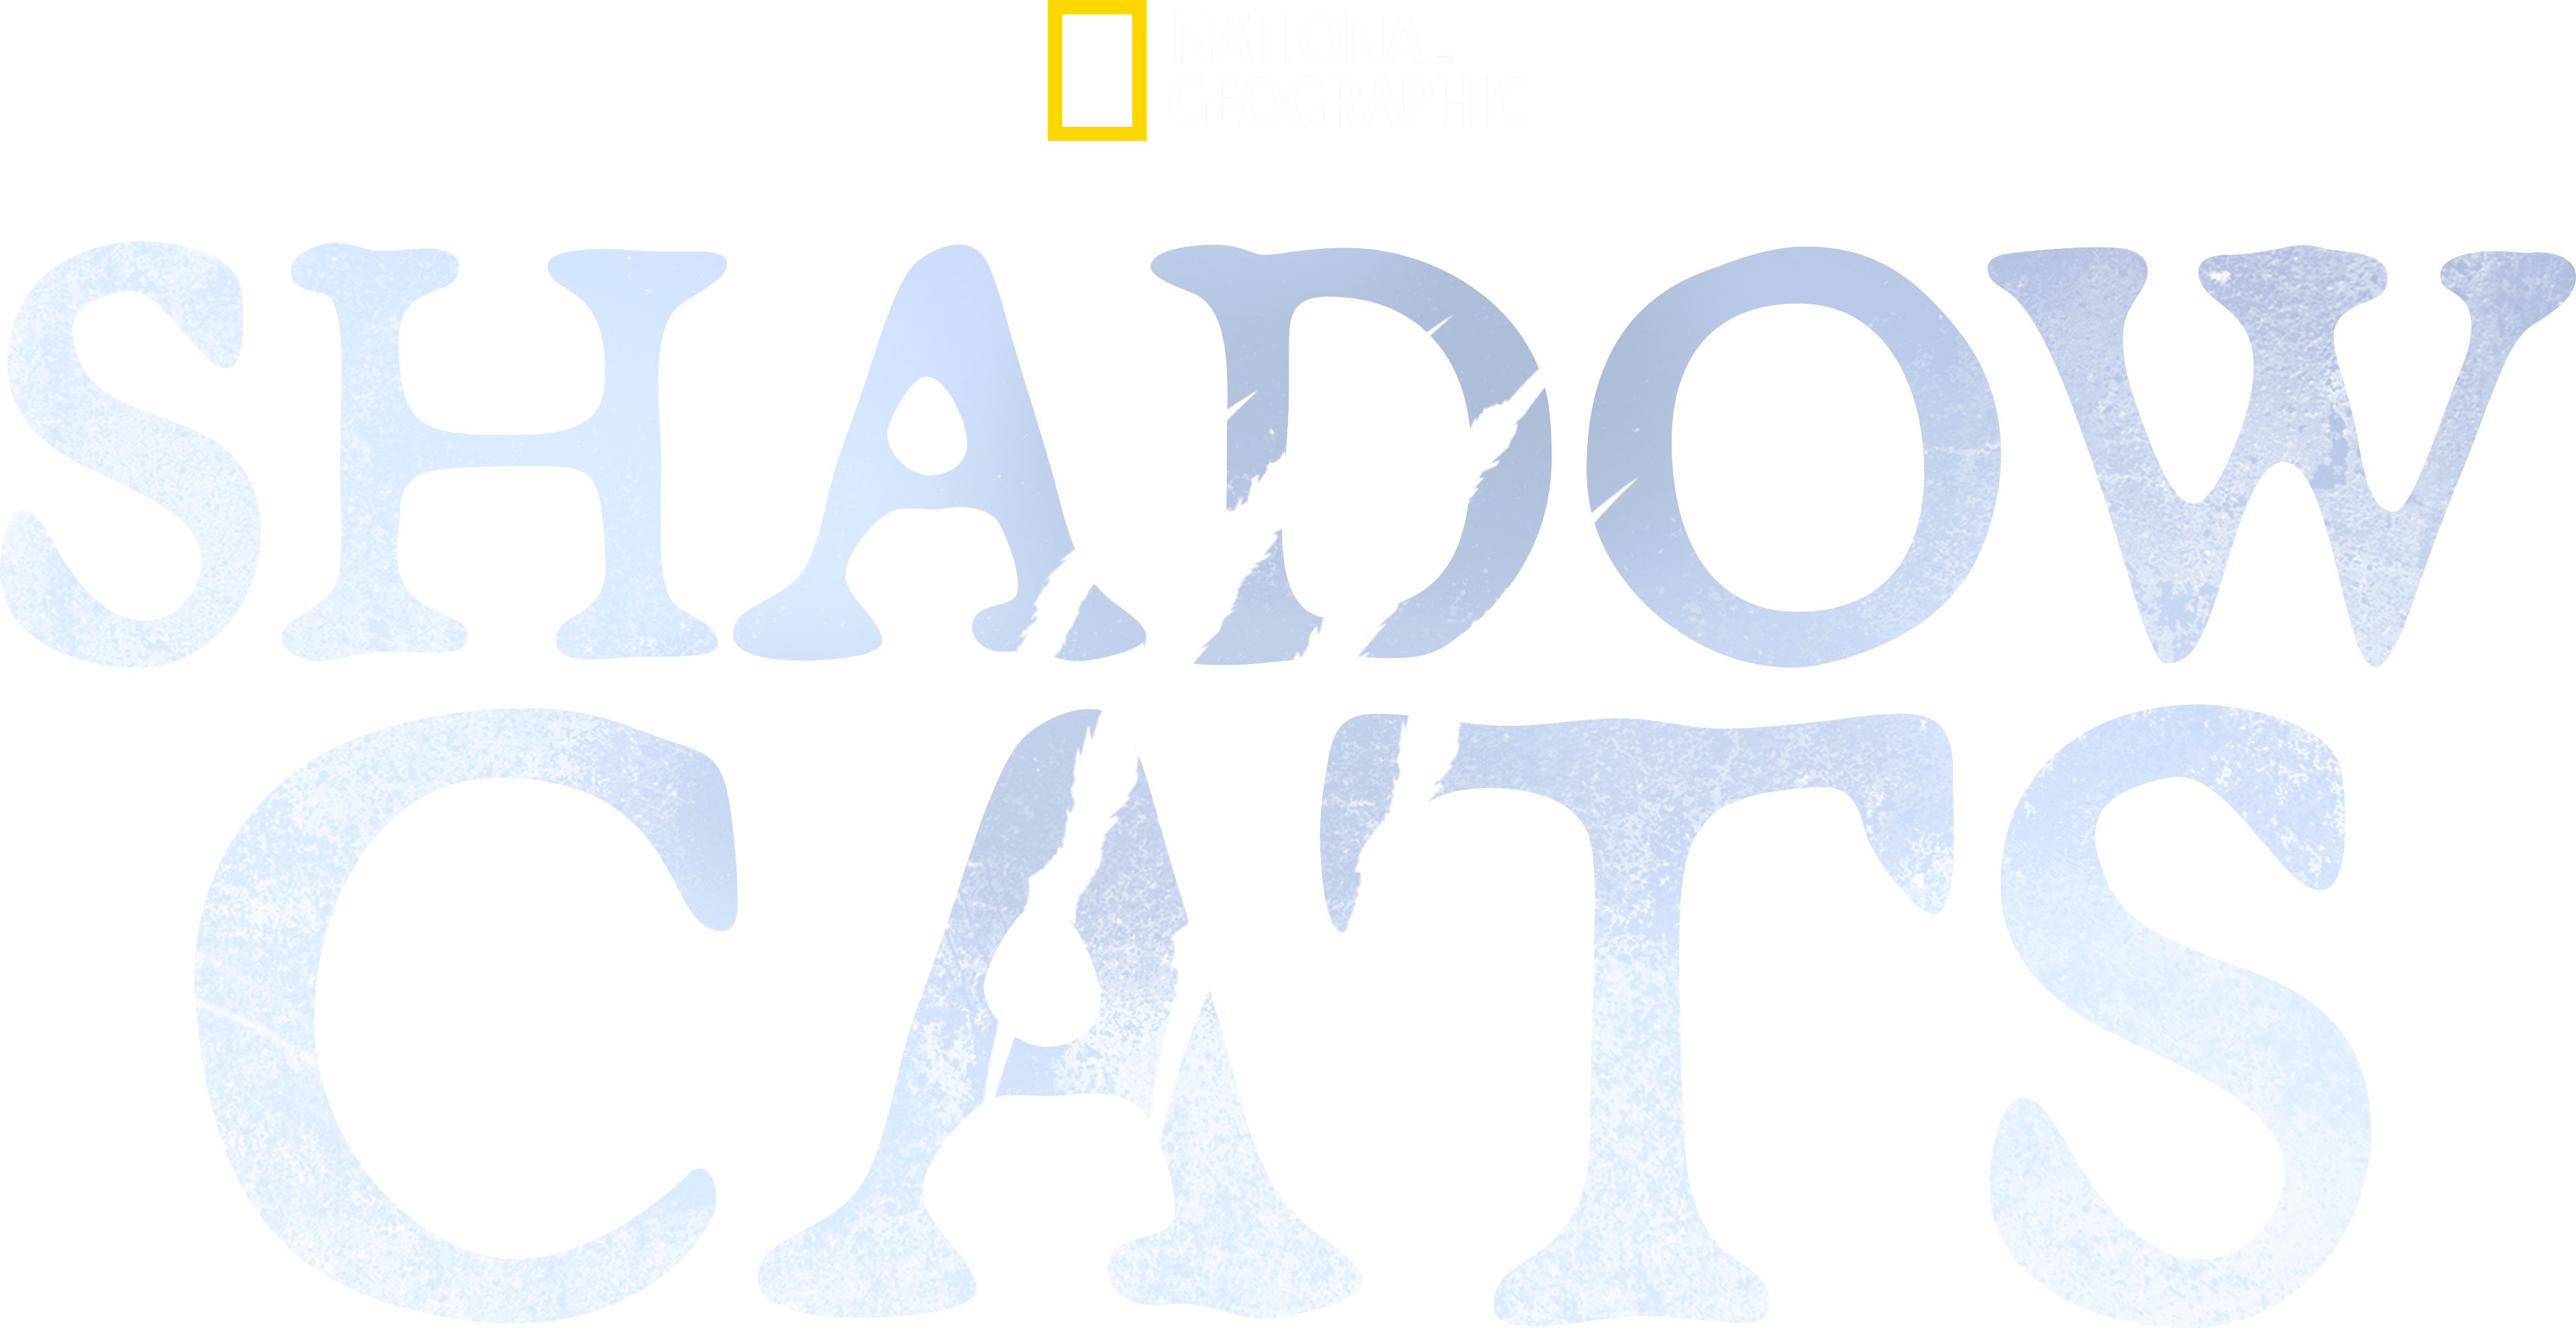 Shadow Cats logo